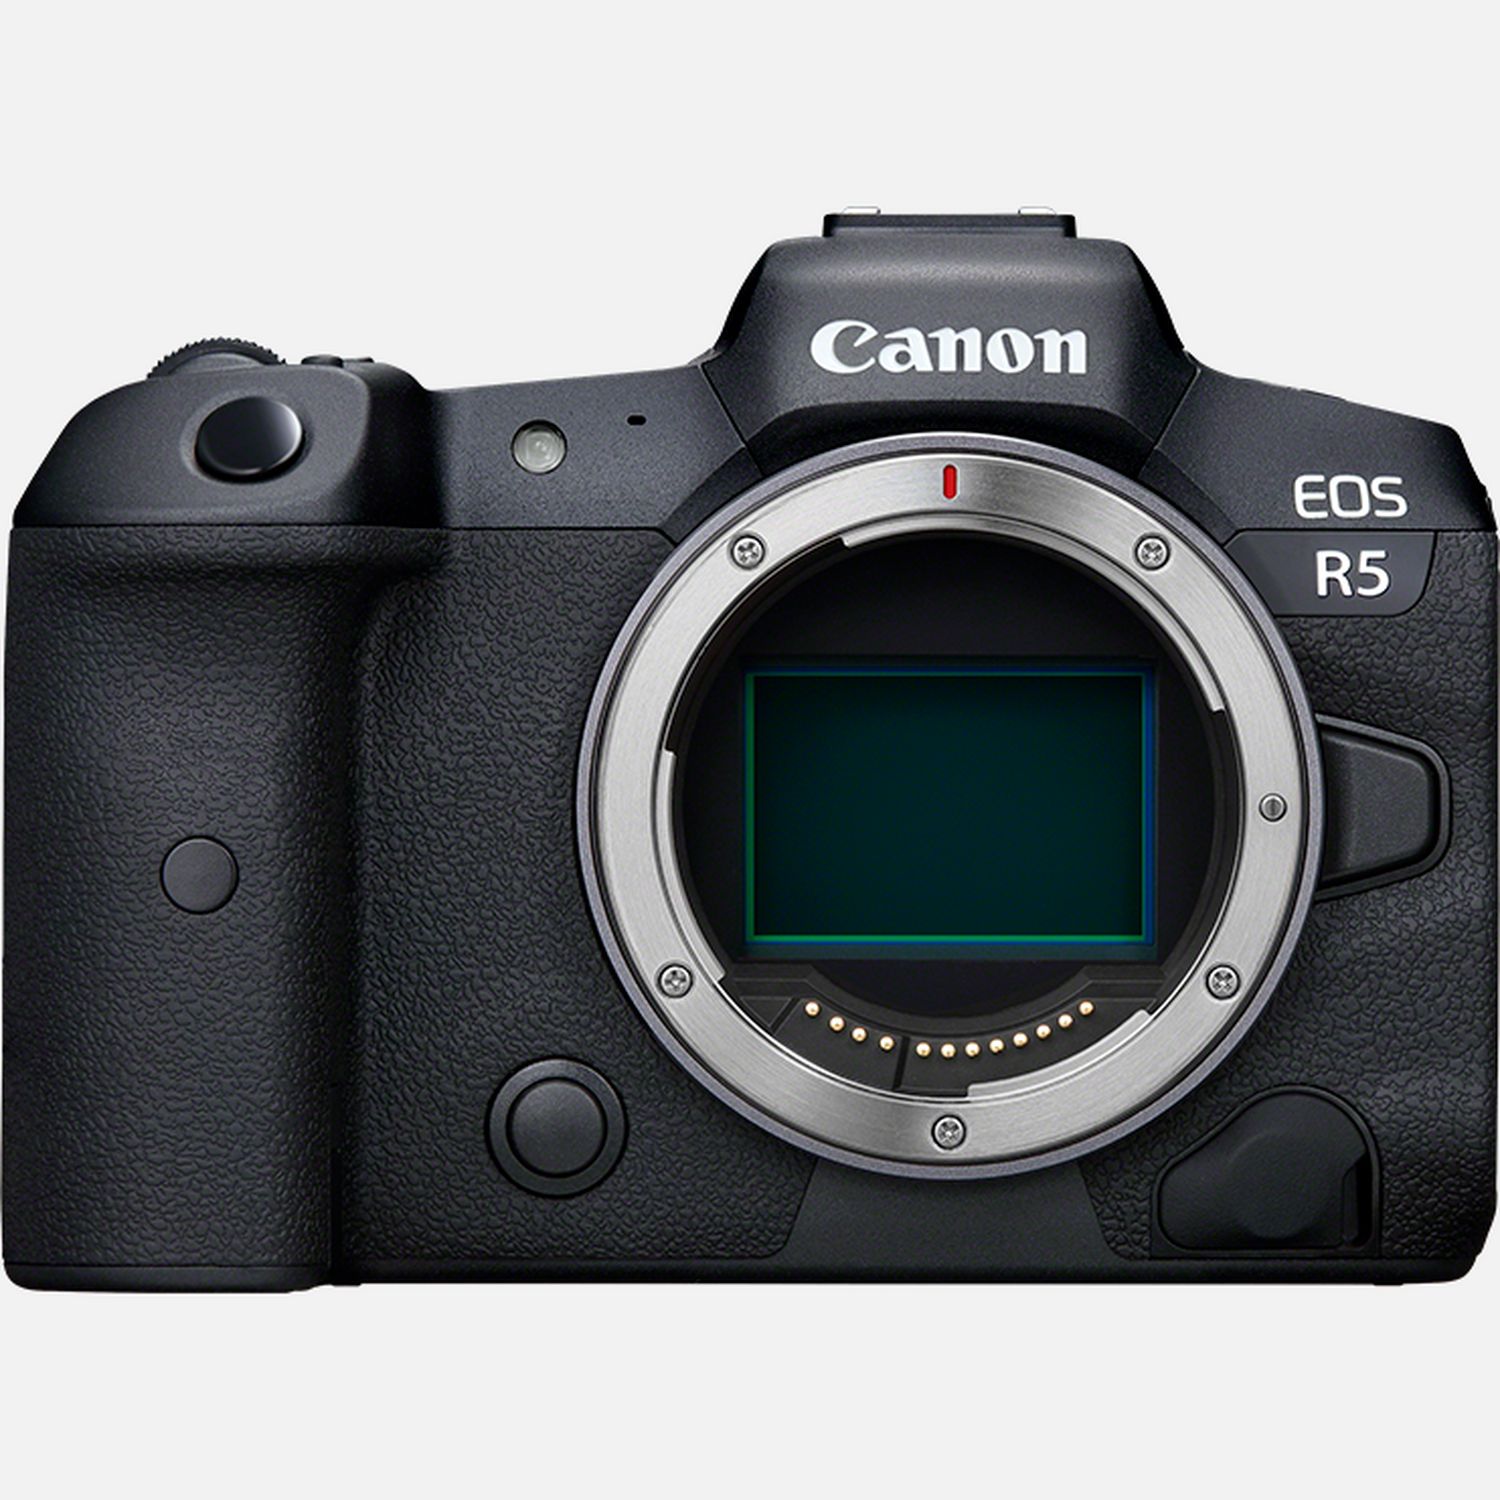 Egal was du aufnimmst  mit der Canon EOS R5 kannst du auf vllig neue Arten kreativ sein: mit 45-Megapixel-Fotos und bis zu 20 B/s bei Reihenaufnahmen mit elektronischem oder bis zu 12 B/s mit mechanischem Verschluss und mit Vollformat 8K-Videos im RAW-Format. Diejenigen, die Portrt-, Reise- und Hochzeitsaufnahmen machen, werden das AF-System der Kamera lieben  es wurde mit Hilfe von Deep-Learning KI programmiert, um Kpfe, Gesichter und Augen von Menschen erkennen und den Fokus przise nachzufhren. Die EOS R5 erkennt auch Katzen und Hunde und sogar Vgel  ideal fr die Tierfotografie. Auergewhnliche 12 Bit 8K RAW-Videos knnen aufgenommen werden, und das 4:2:2 10 Bit 4K-Material mit Bildraten bis zu 120 B/s eignet sich fr hervorragende Zeitlupenaufnahmen. Mit der Drahtlos-Technologie kannst du Aufnahmen direkt auf image.canon, einen FTP-Server und auf ein Mobilgert bertragen.  Vorteile      Mit 45-Megapixel-Fotos im Vollformat hltst du feinste Details fest und erhltst einen beeindruckenden Dynamikumfang. Die maximale ISO-Empfindlichkeit von ISO 51.200 und ein bis -6 LW arbeitender AF sorgen bei dieser spiegellosen Vollformatkamera fr erstklassige Low-Light-Eigenschaften          Ob Hochzeits-, Portrt-, Reise-, Fotojournalismus- oder Landschaftsfotografie  diese spiegellose 8K-Kamera ist fr jeden Einsatzbereich ideal. Dank ihrer Reihenaufnahmen mit bis zu 20 B/s ist sie auch ideal fr die Wildlife- und Sport-Fotografie          Zum Festhalten flchtiger Augenblicke bietet die Kamera bis zu 20 B/s mit dem geruschlosen elektronischen Verschluss und bis zu 12 B/s mit mechanischem Verschluss  bei voller AF-Nachfhrung mit einer Fokussiergeschwindigkeit von nur ca. 0,05 Sek. Der Highspeed DIGIC X Prozessor ermglicht eine Bildverarbeitung auf neuem Niveau          Ganz neue Mglichkeiten fr lange Belichtungszeiten: Die EOS R5 bietet einen kamerainternen 5-achsigen Bildstabilisator der zusammen mit einem Objektiv mit optischem Bildstabilisator bis zu 8 Stufen Stabilisierung ermglicht. Ein neuer leiser Verschluss ermglicht unaufflliges Fotografieren          Mit dem neuen AF-System, das mit Deep-learning KI programmiert wurde und Krper, Gesichter und Augen erkennt, kannst du zuverlssig auf sich bewegende Motive fokussieren. Die EOS R5 erkennt und verfolgt auch Hunde, Katzen und Vgel  Vgel sogar im Flug          Videoaufnahmen waren noch nie so gut: 12 Bit 8K RAW-Aufnahmen zeigen unglaubliche Details und fr ein ganz neues Niveau an Zeitlupensequenzen stehen 4:2:2 10 Bit 4K mit Bildraten bis 120 B/s zur Verfgung. Mit Oversampling der 8K-Videos lassen sich besonders detailreiche 4K-Videos generieren.          Diese professionelle 8K-Kamera bietet bei Videoaufnahmen AF-Nachfhrung und Bildstabilisierung  fr Ergebnisse die aussehen, als wren sie mit einem Hollywood-Budget gedreht worden. Zebra-Anzeige zur genauen Beurteilung der Belichtung          Dank seiner 5,76 Millionen Bildpunkte, der 100% Bildfeldabdeckung und einer Bildwiederholrate von 120 B/s lsst es der Blick durch den elektronischen Sucher so aussehen, als ob nichts zwischen dir und deinem Motiv steht. Das dreh- und schwenkbare Display hilft bei der Bildkomposition aus ungewhnlichen und kreativen Blickwinkeln          Die Canon EOS R5 kann JPEG-, HEIF- oder RAW-Dateien aufnehmen, und mit den zwei Kartensteckpltzen kannst du verschiedene Dateien auf verschiedene Karten speichern. Ein Steckplatz nimmt blitzschnelle CFexpress-Karten auf  wir empfehlen CFexpress 1.0 (400 MB/s oder hher) fr eine optimale Videoleistung  whrend der andere Steckplatz SD-Karten bis zu V90 UHS-II Geschwindigkeiten untersttzt          Die EOS R5 nutzt 2,4 GHz / 5 GHz WLAN, um Bilder ber image.canon direkt in die Cloud hochzuladen und sich mit Mobilgerten zu verbinden, auf die deine Aufnahmen bertragen und von dort aus weitergeleitet werden knnen  ideal fr Reisefotografie und Fotojournalismus. Die permanente Kopplung per Bluetooth macht das Aufbauen der Verbindung besonders einfach. Der optional erhltliche Wireless File Transmitter WFT-E10 optimiert die Verbindungsoptionen: MIMO Antennen sorgen fr eine stabilere WLAN-Verbindung und die Mglichkeiten fr SFTP und eine kabelgebundene LAN-Verbindung werden damit ebenfalls gegeben.          Mit der Dual Pixel RAW-Verarbeitung erhltst du direkt aus der Kamera groartige Bilder. Die Portrt-Aufhellung simuliert die Wirkung von Reflektoren bei Portrtaufnahmen, und mit Hintergundklarheit kannst du den Hintergrund bei Landschaftsaufnahmen klarer einstellen          Zuverlssige fotografieren  selbst bei harten Umweltbedingungen. Diese professionelle spiegellose Kamera von Canon verfgt ber ein Gehuse aus einer Magnesiumlegierung und Dichtungen, die vor Staub und Spritzwasser schtzen. Ein neuer Akku mit grerer Kapazitt ermglicht mehr Aufnahmen pro Ladung          Lieferumfang       EOS R5 Gehuse         Kamera-Gehusedeckel R-F-5         Tragegurt ER-EOS R5         Akkuladegert LC-E6E         Akku LP-E6NH         Abdeckung fr Akkufach         Netzkabel         USB-Kabel IFC-100U + Kabelschutz         Anleitungen              Technische Daten              45-Megapixel-Vollformatsensor  Erstaunliche Detailgenauigkeit und hoher Dynamikumfang                20 Bilder pro Sekunde  Noch zuverlssiger den perfekten Moment festhalten                8K RAW-Video  12 Bit RAW-Videos, die so aussehen wie das richtige Leben                5.940 AF-Positionen  Alles im Bildausschnitt kann fokussiert werden                DIGIC X Bildprozessor  Fr eine revolutionre Leistung und Verarbeitung                4K/120p Vollformat-Videos  4:2:2 10 Bit Aufnahmen mit hoher Bildrate                8-Stufen-Bildstabilisator  Freihandaufnahmen wie sie nie zuvor mglich waren                ISO 100 bis 51.200  Die Freiheit, bei praktisch jeder Lichtbedingung zu fotografieren                Dreh- und schwenkbares 8,01 cm (3,15 Zoll) Touchscreen-Display mit 2,1 Millionen Bildpunkten  Ideal fr Aufnahmen aus kreativen Blickwinkeln                Zwei Speicherkarten-Steckpltze  Untersttzung fr CFexpress und SD-Karten                2,4 GHz/5 GHz WLAN-Band  Aufnahmen teilen, in die Cloud hochladen und die Kamera fernsteuern                Bluetooth  Permanente Kopplung mit geringem Stromverbrauch          Alle technischen Daten zeigen                              Preise und Auszeichnungen                                                                                                                            -